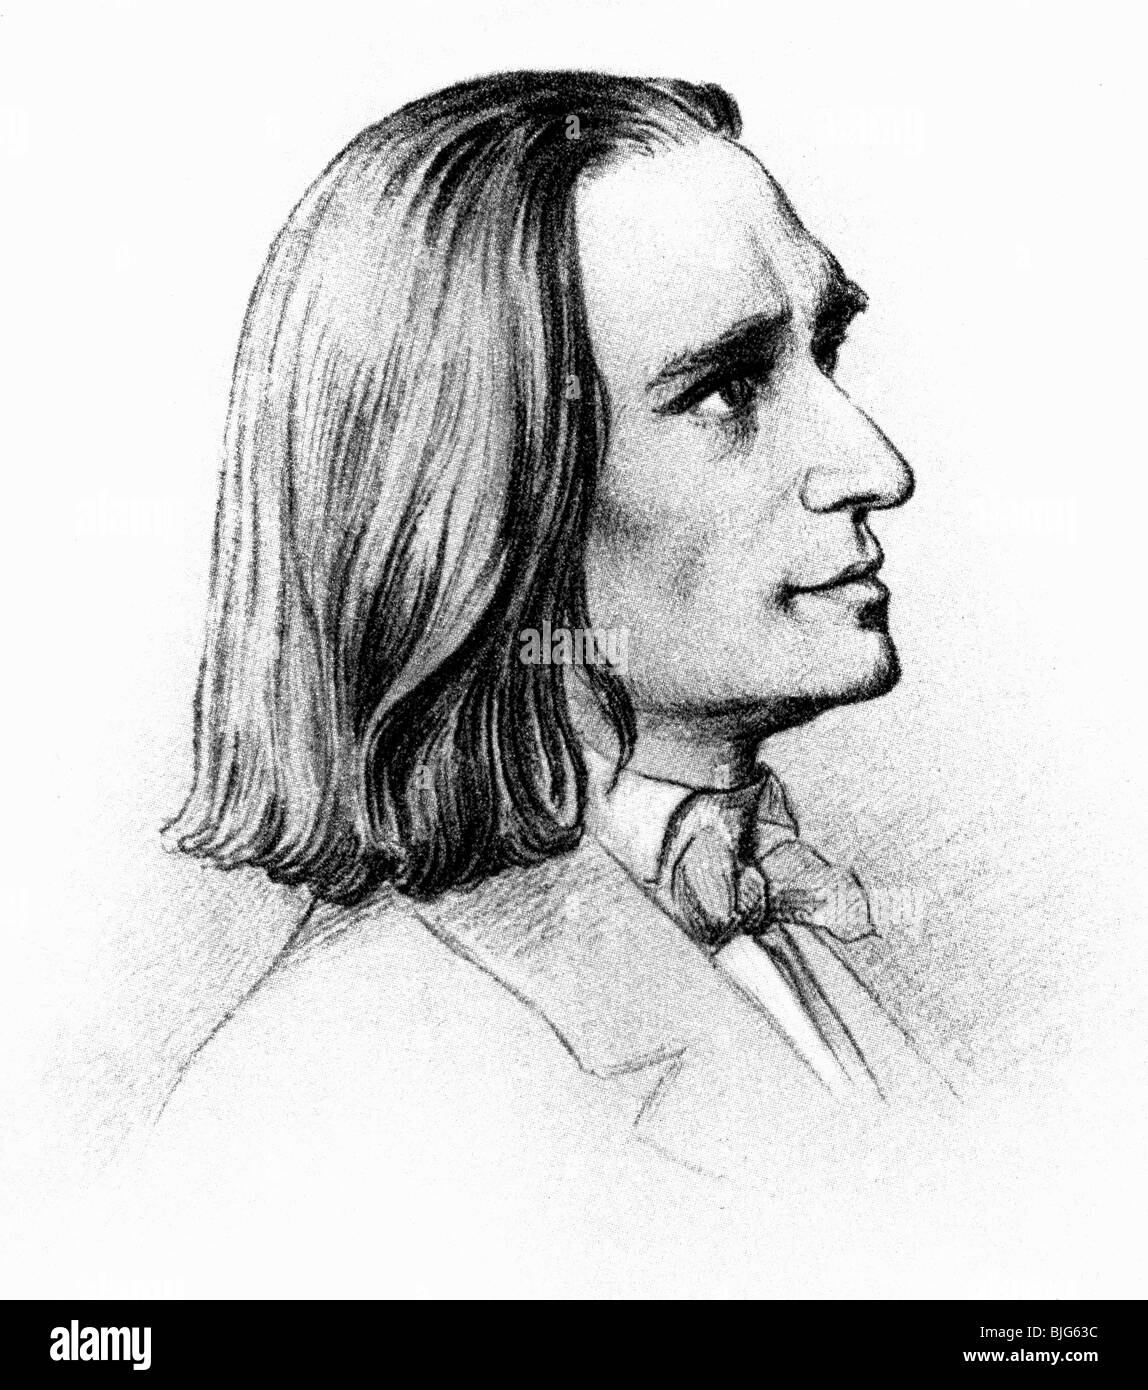 Liszt, Franz, 22.10.1811 - 31.7.1886, compositeur et pianiste hongrois, portrait, dessin de Friedrich Preller, 1858, Banque D'Images